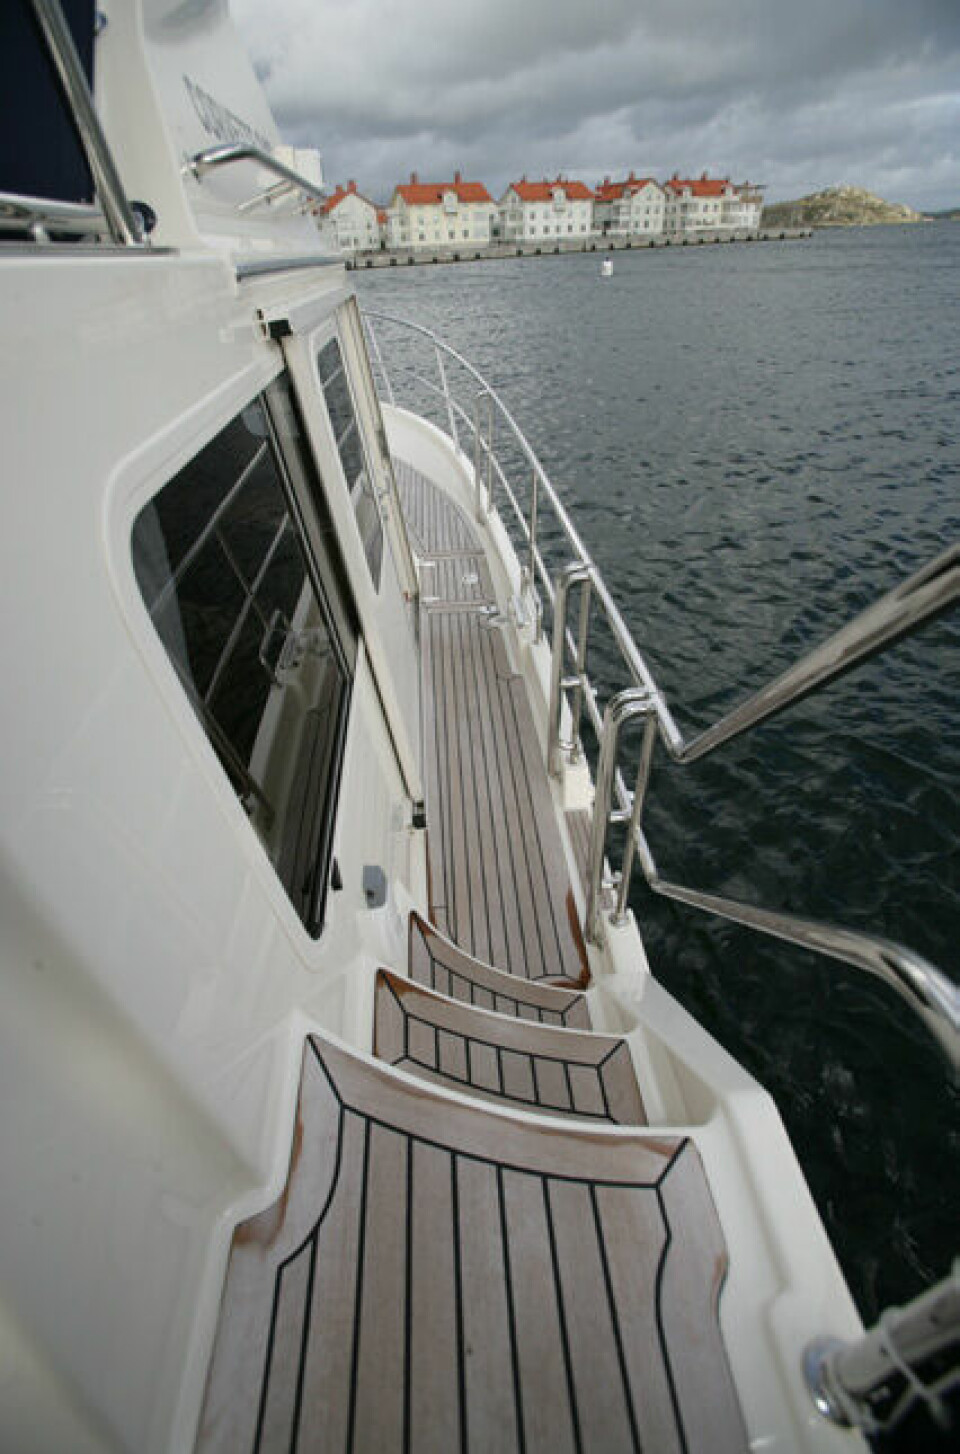 BREDE SIDEDEKK:
Kombinasjonen brede sidedekk og kraftige rekker gjør
det meget enkelt og trygt å
bevege seg rundt på båten.